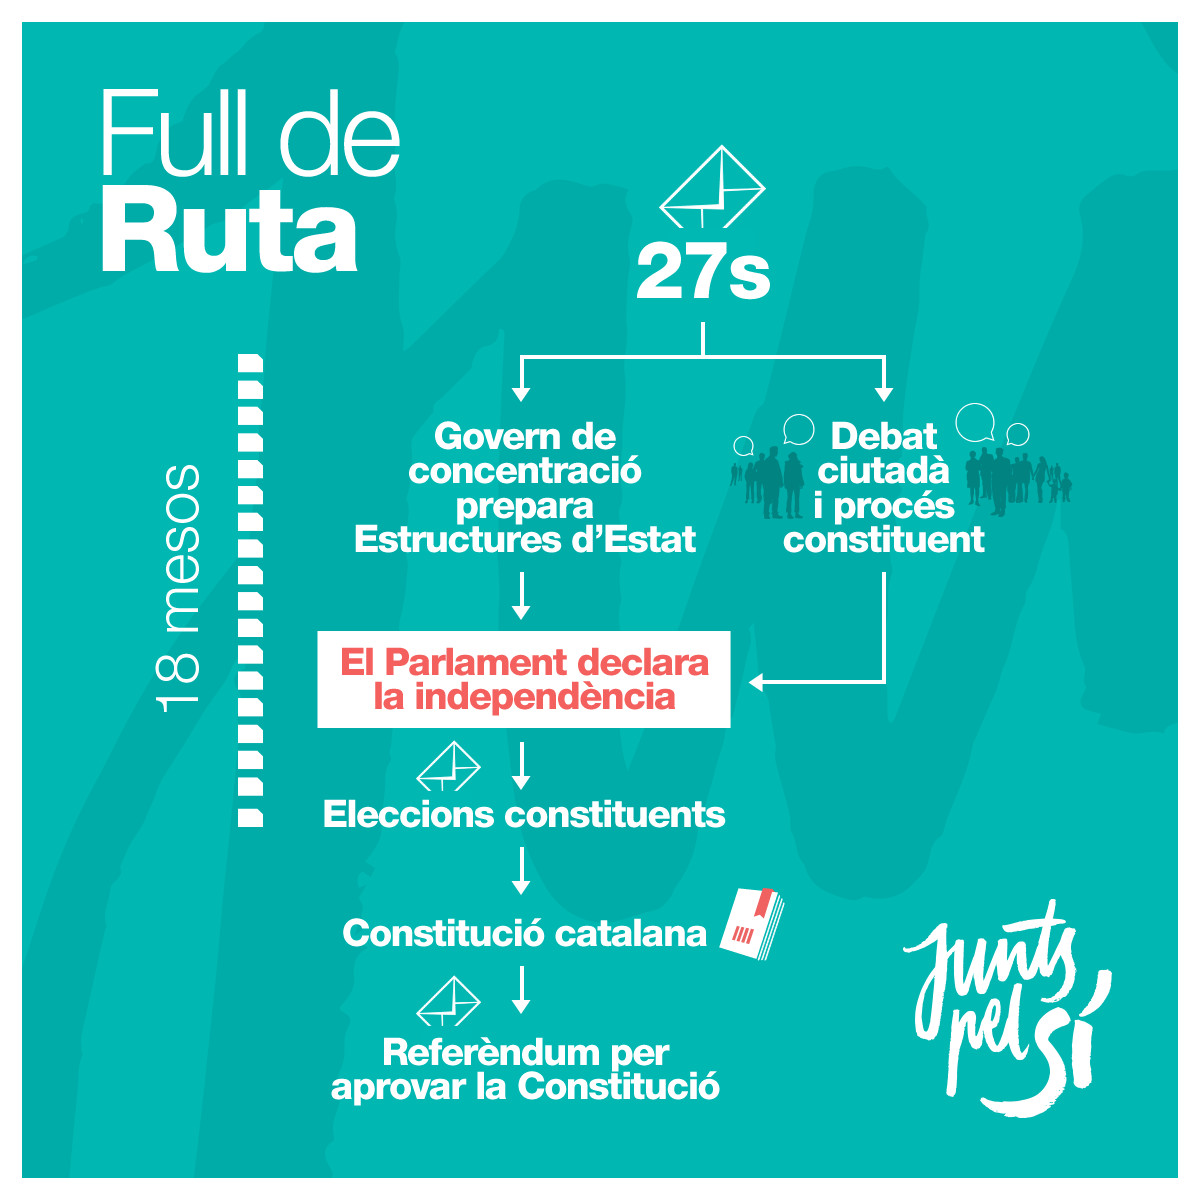 Hoja de ruta planteada por Junts pel Sí antes de las elecciones autonómicas del 27 de septiembre de 2015